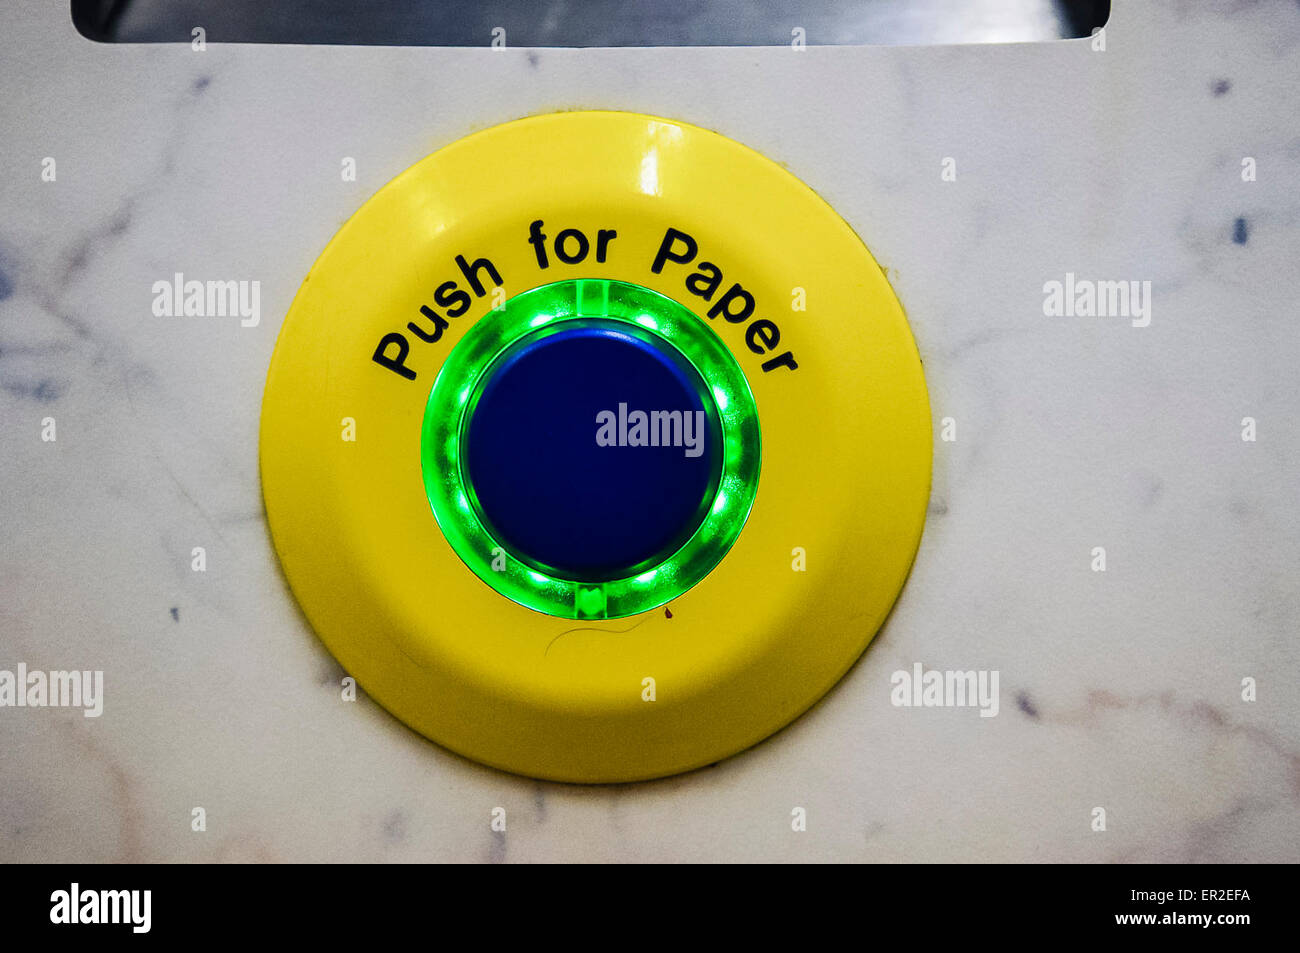 Schaltfläche "Push für Papier" in eine automatische öffentliche Toilette. Stockfoto